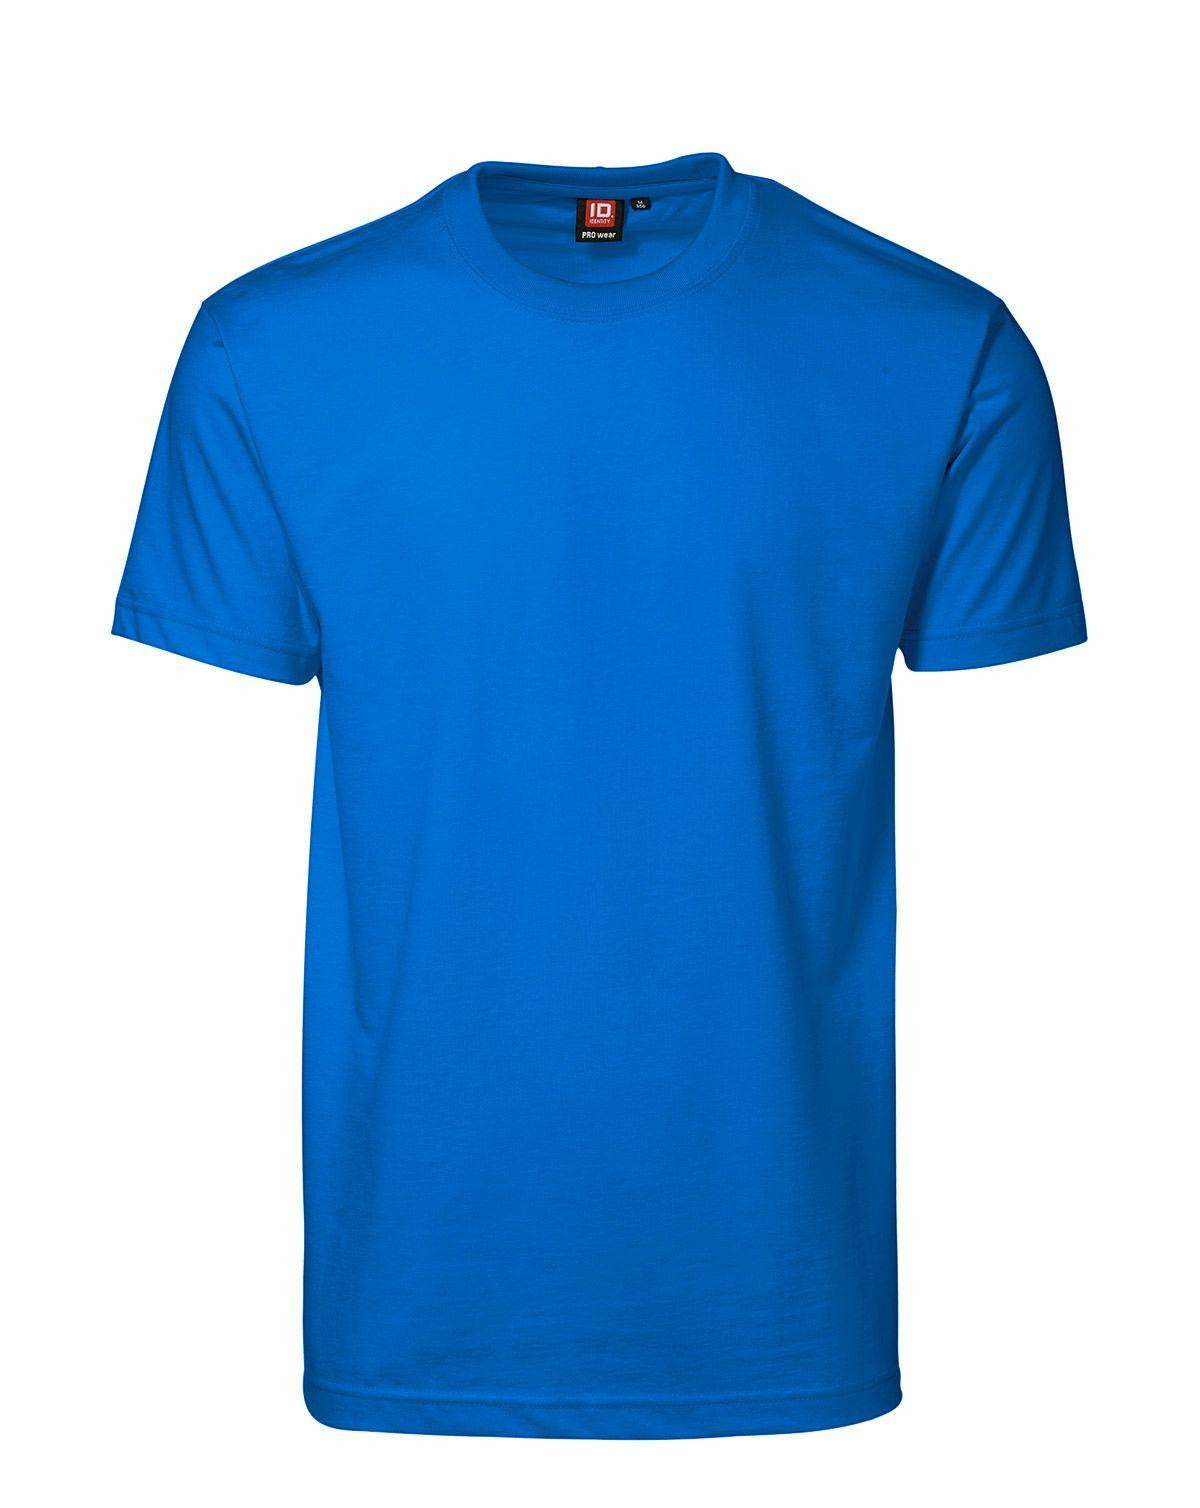 ID PRO Wear T-shirt til Herre (Azure, 2XL)